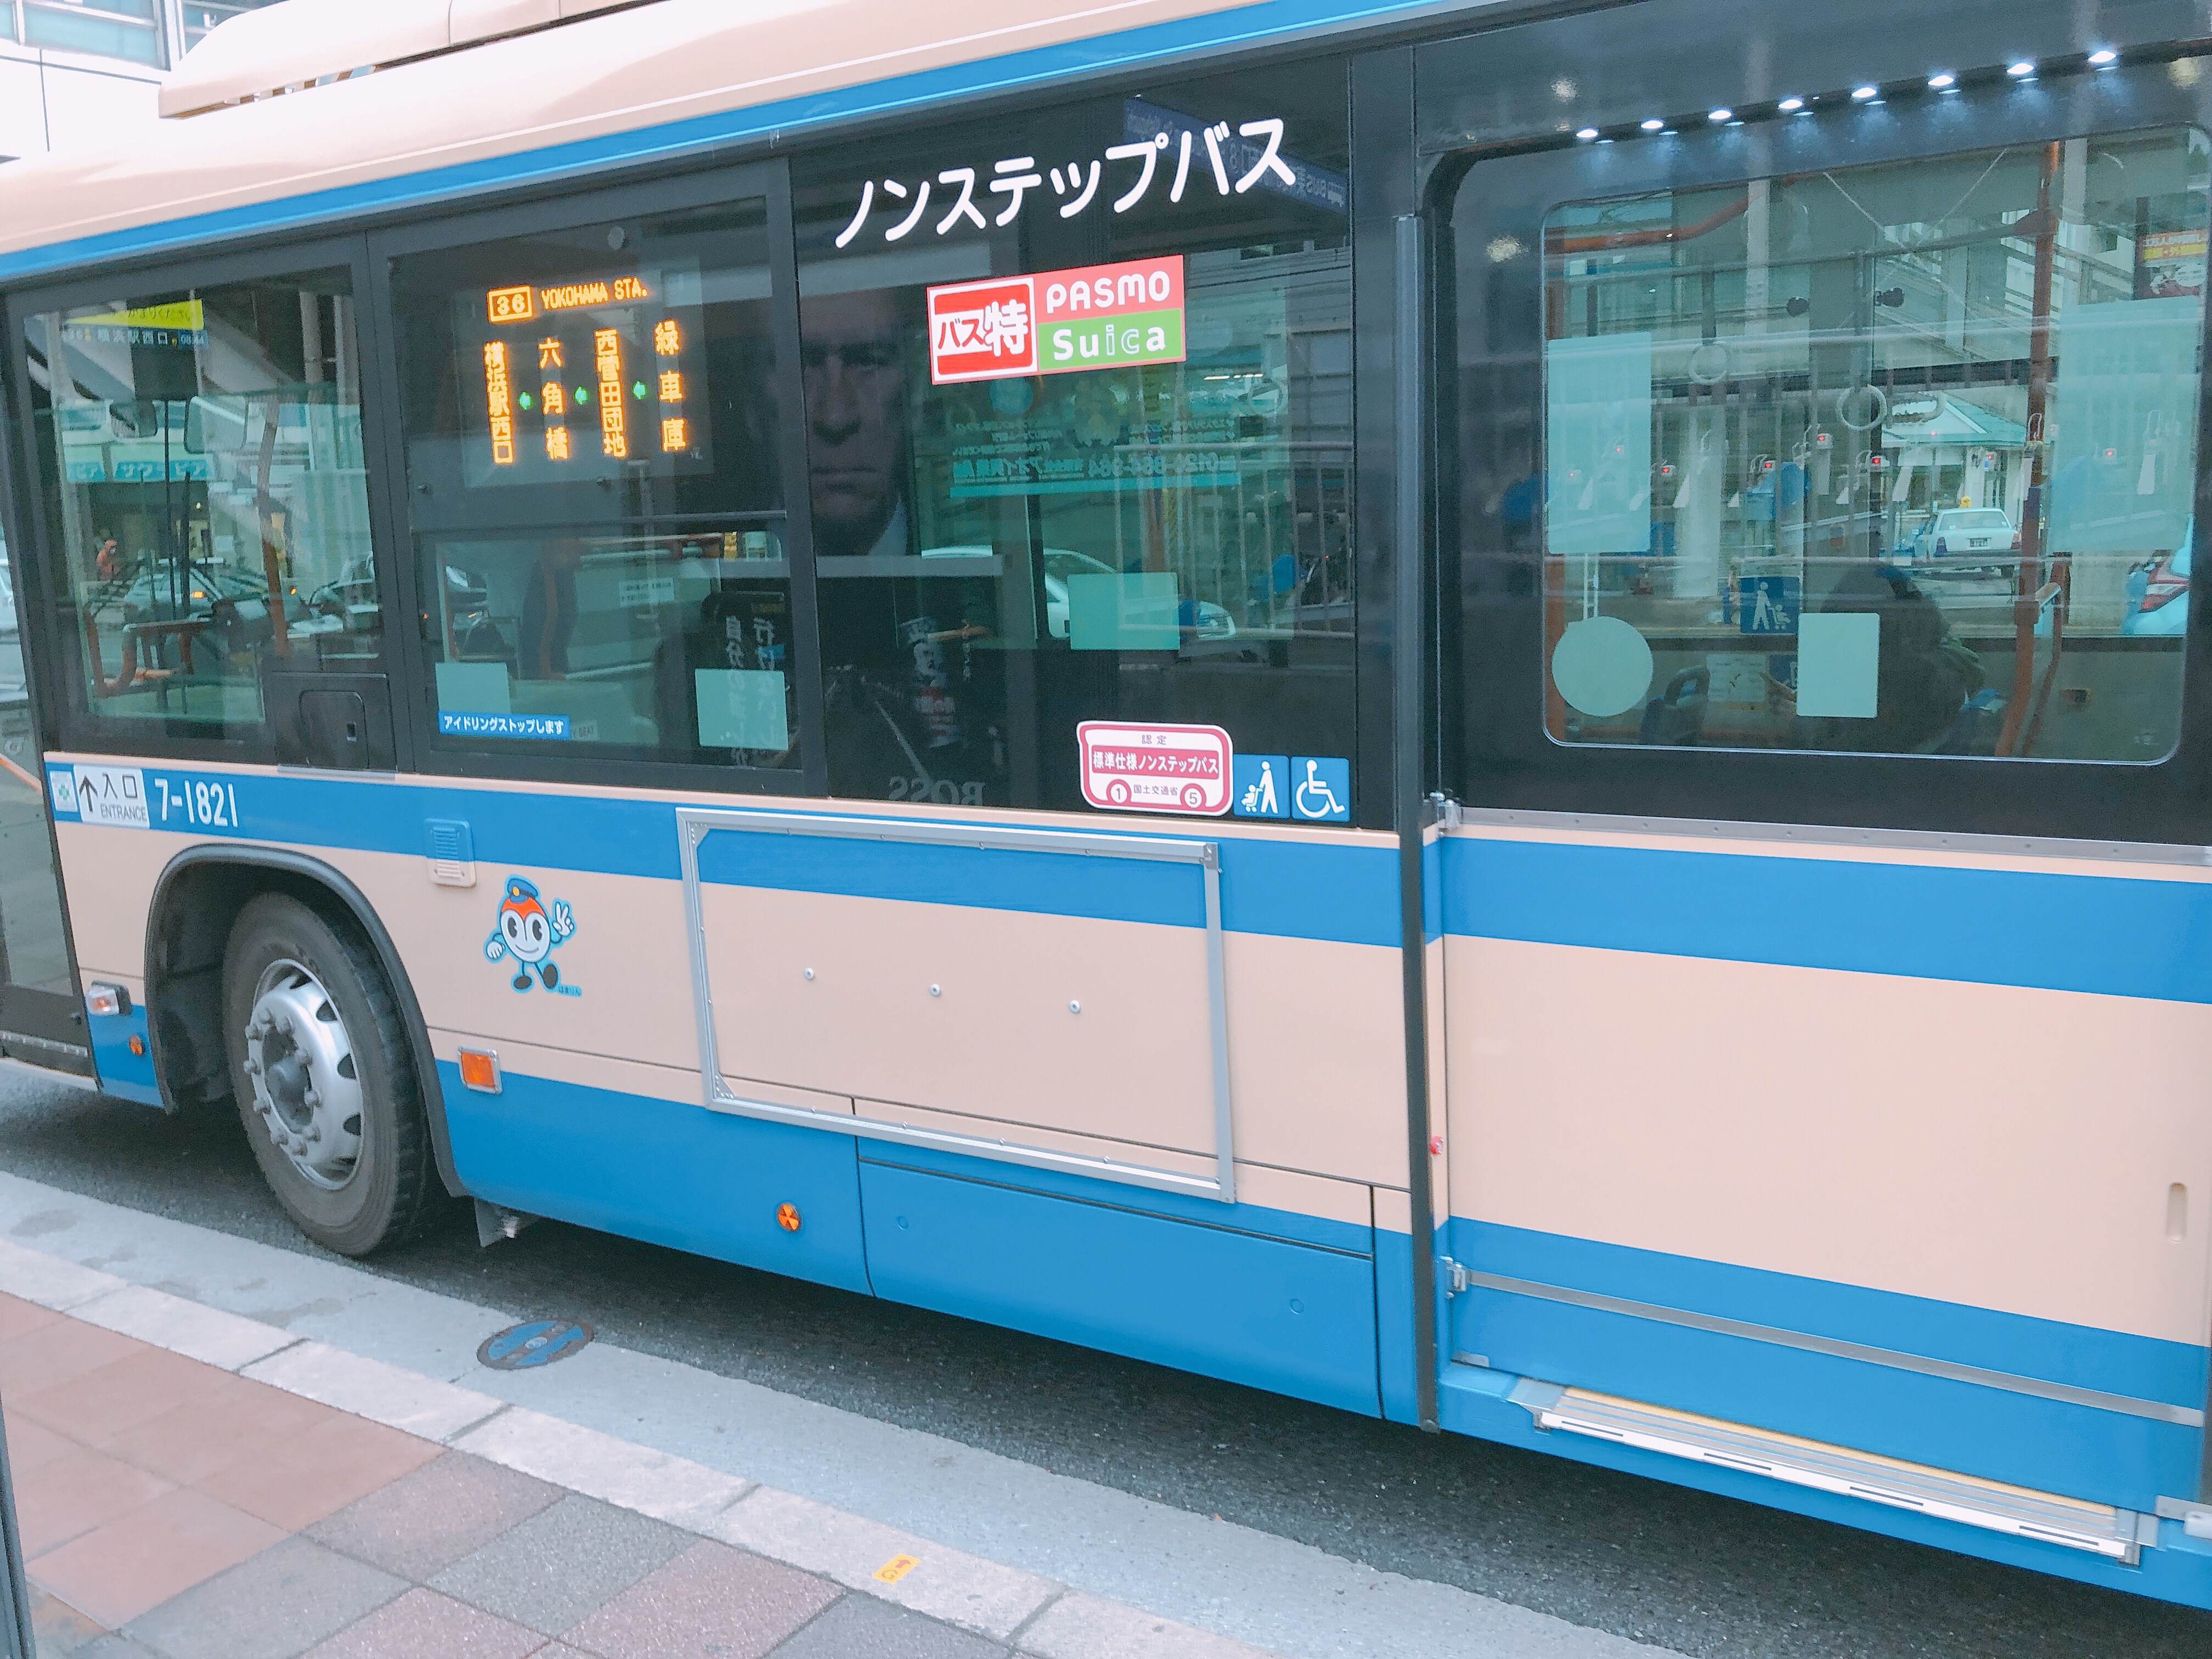 横浜市営バス お得な環境定期券制度 バス特についてまとめました 横浜情報ばこ